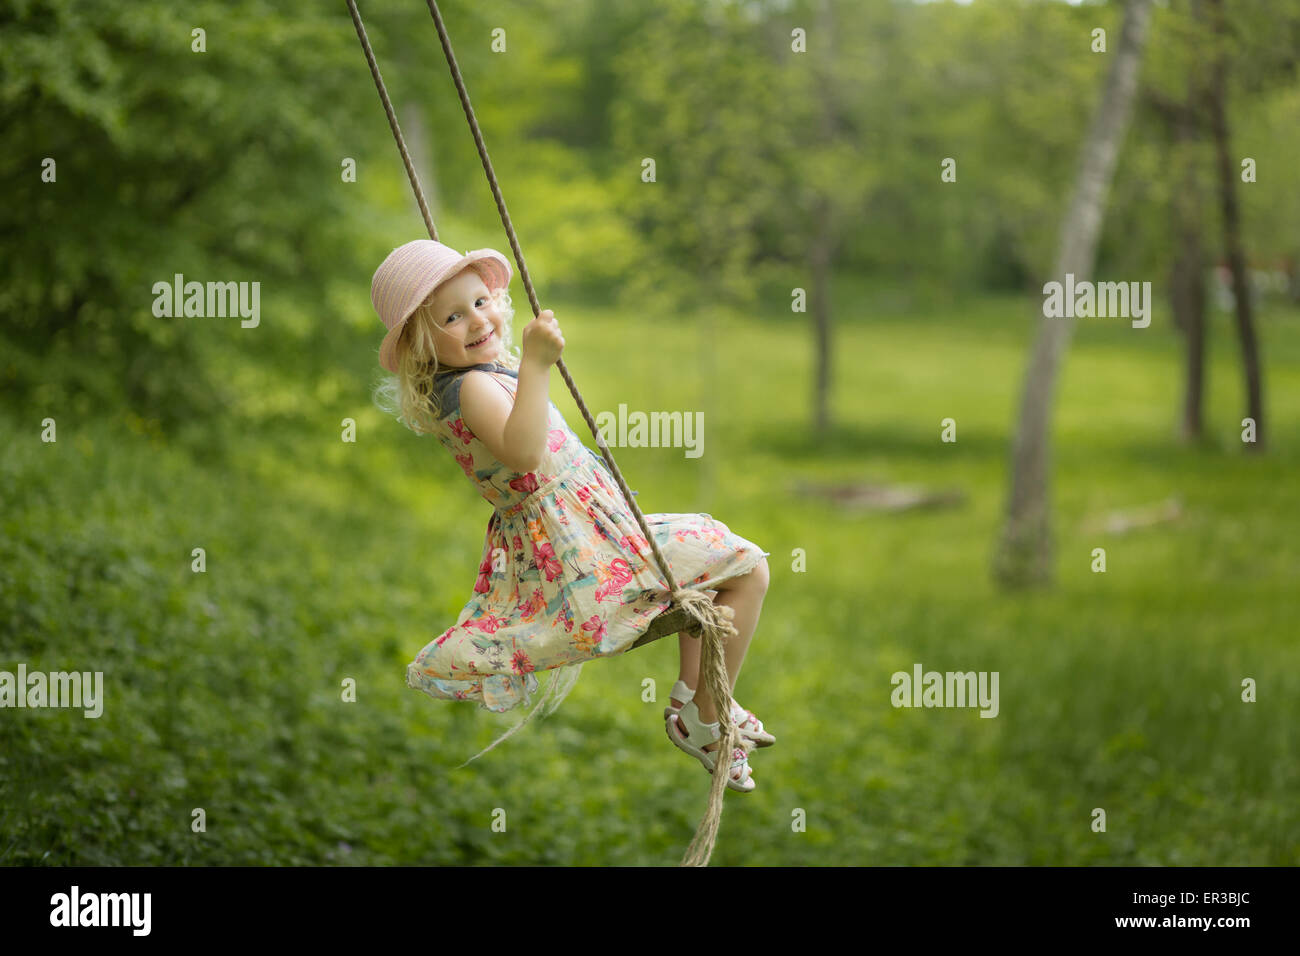 Mädchen auf einer Schaukel im Garten Stockfotografie - Alamy